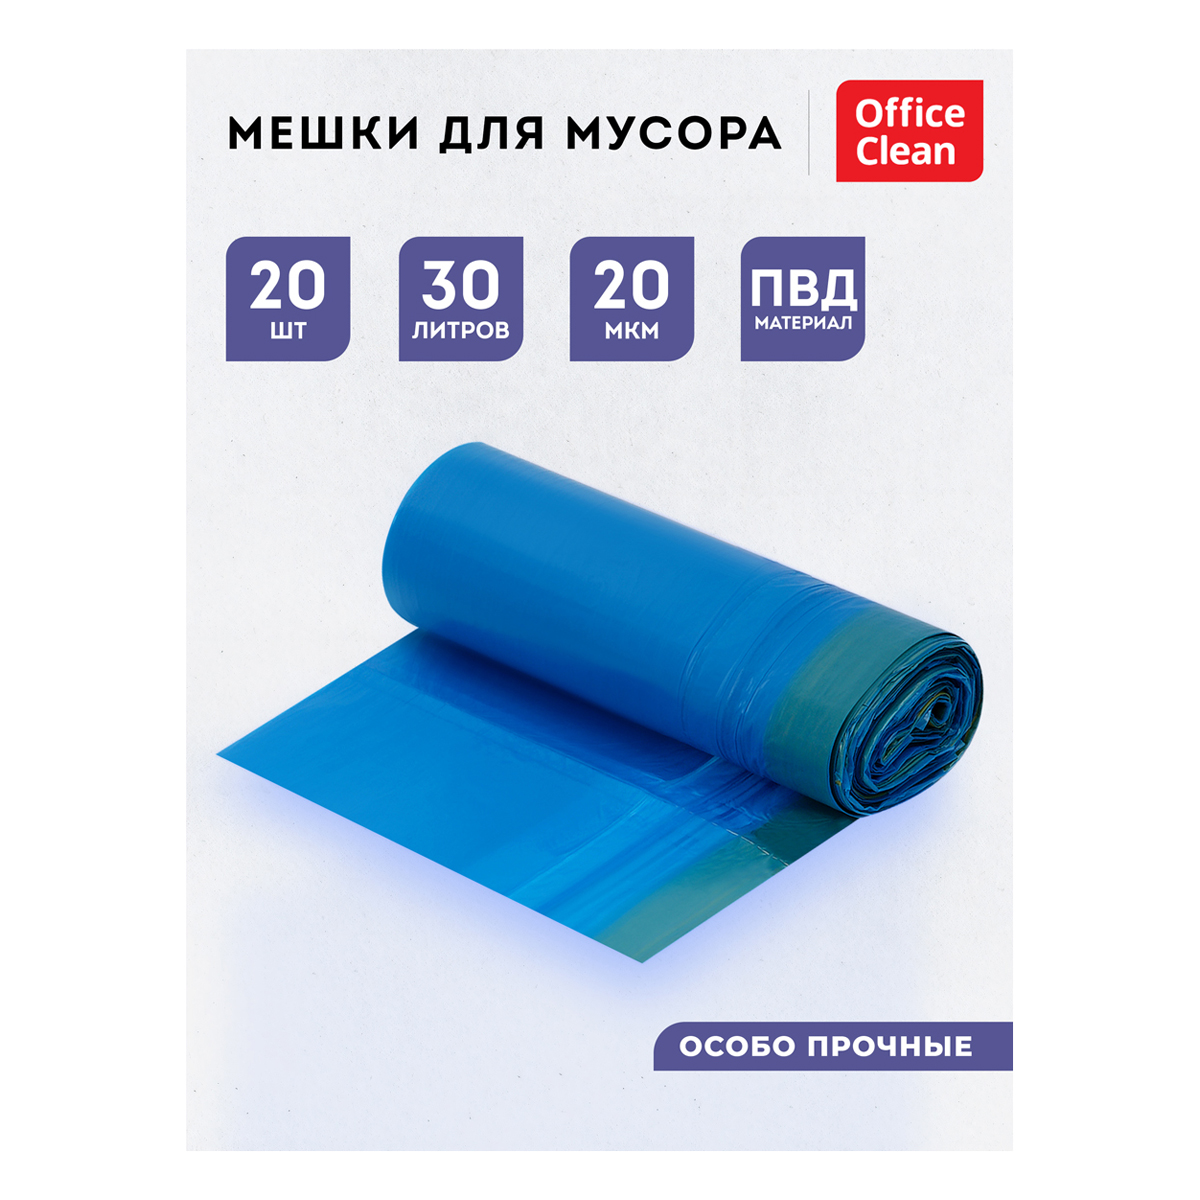 Мешки для мусора 30л OfficeClean ПВД, 50*60см, 20мкм, 20шт., особо прочные, синие, в рулоне, с завяз